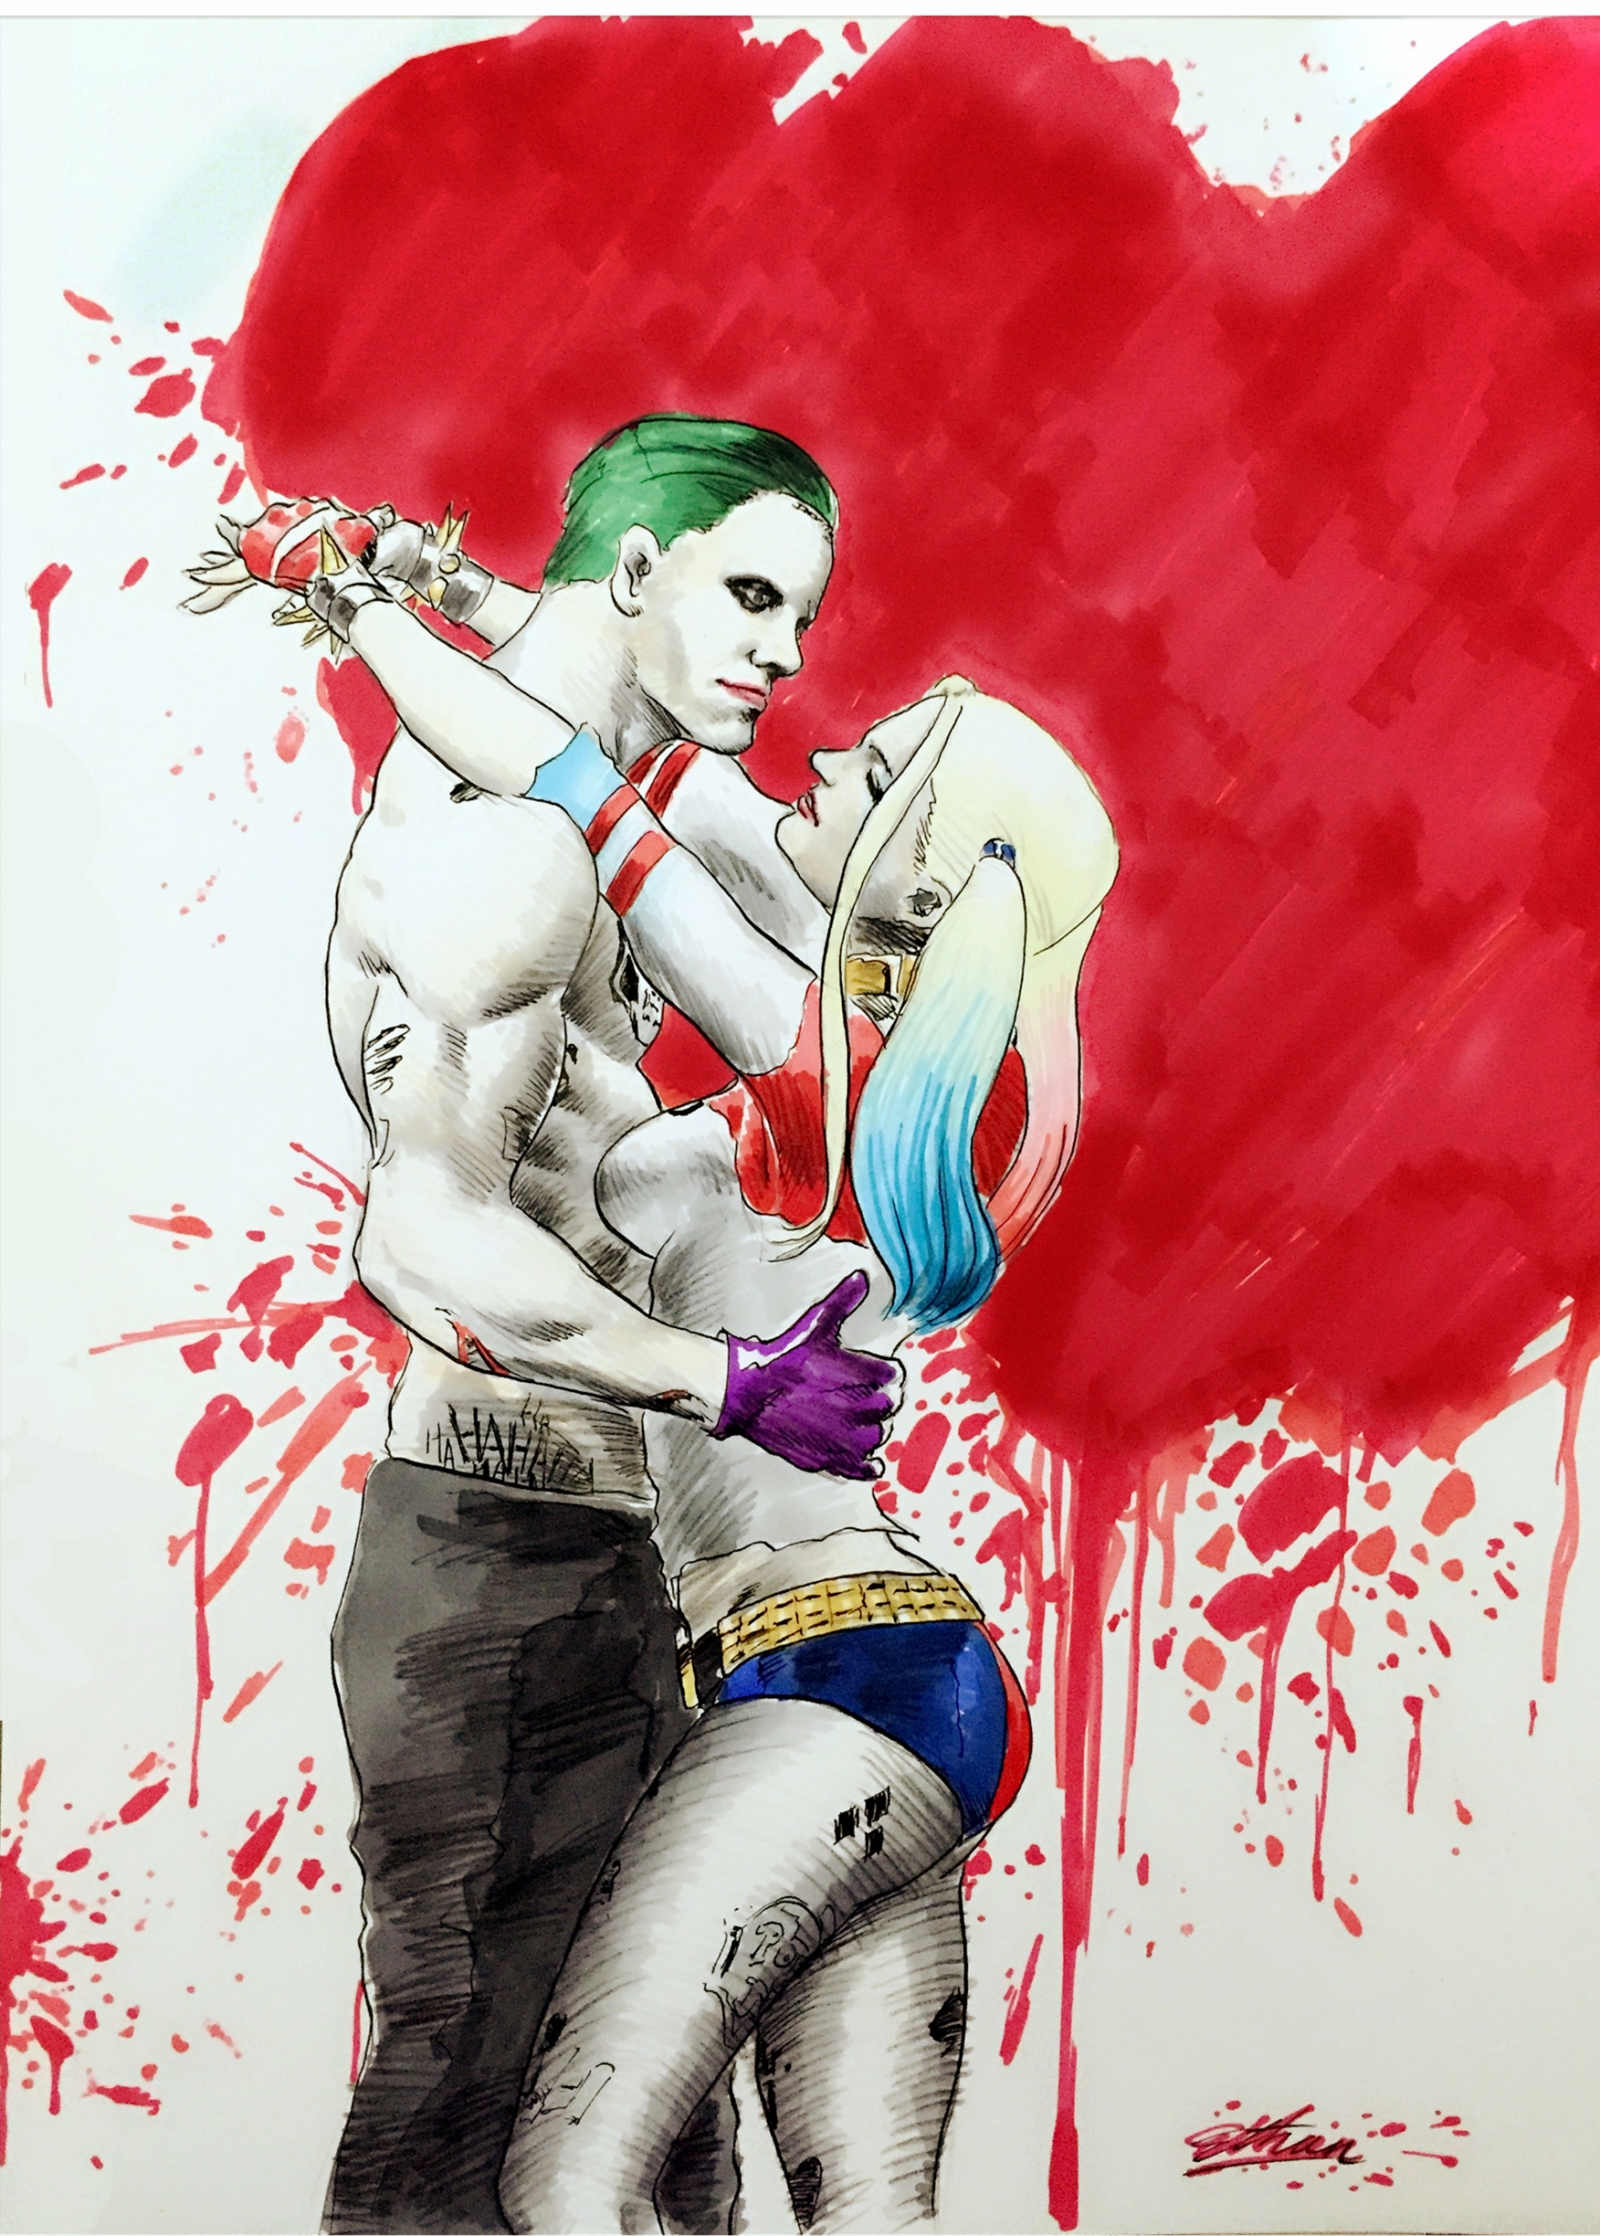 Harley & Joker.